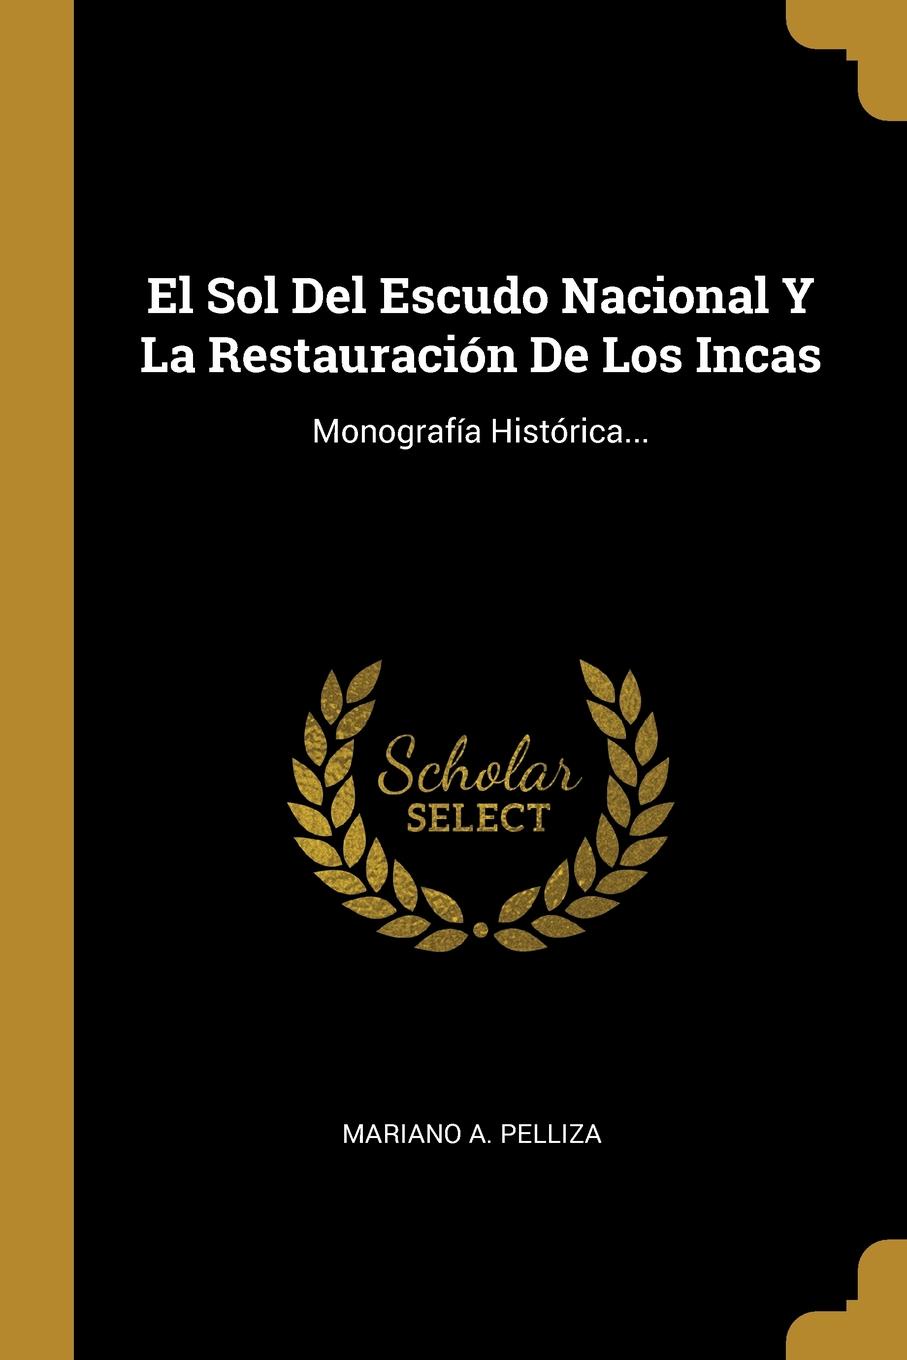 El Sol Del Escudo Nacional Y La Restauracion De Los Incas. Monografia Historica...